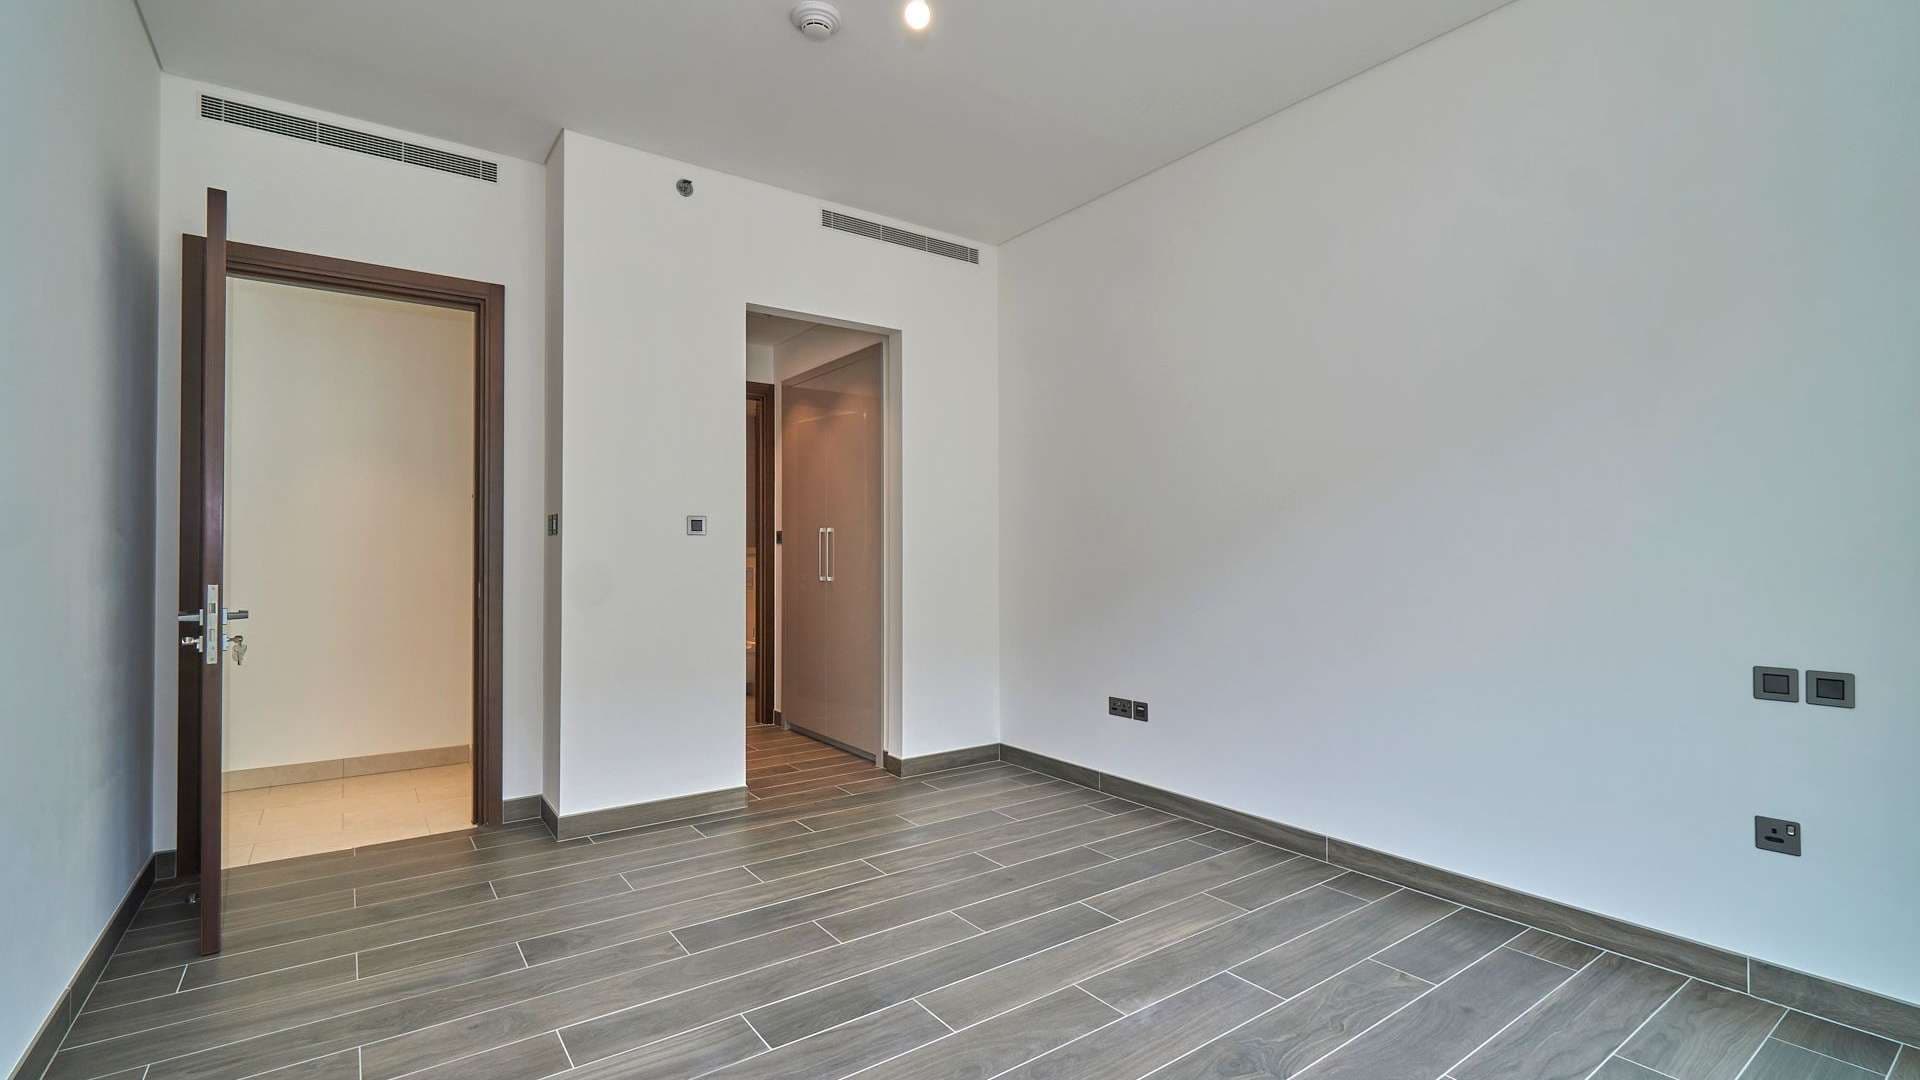 2 Bedroom Apartment For Rent Sobha Hartland Lp08468 2f734bda24de3e00.jpeg